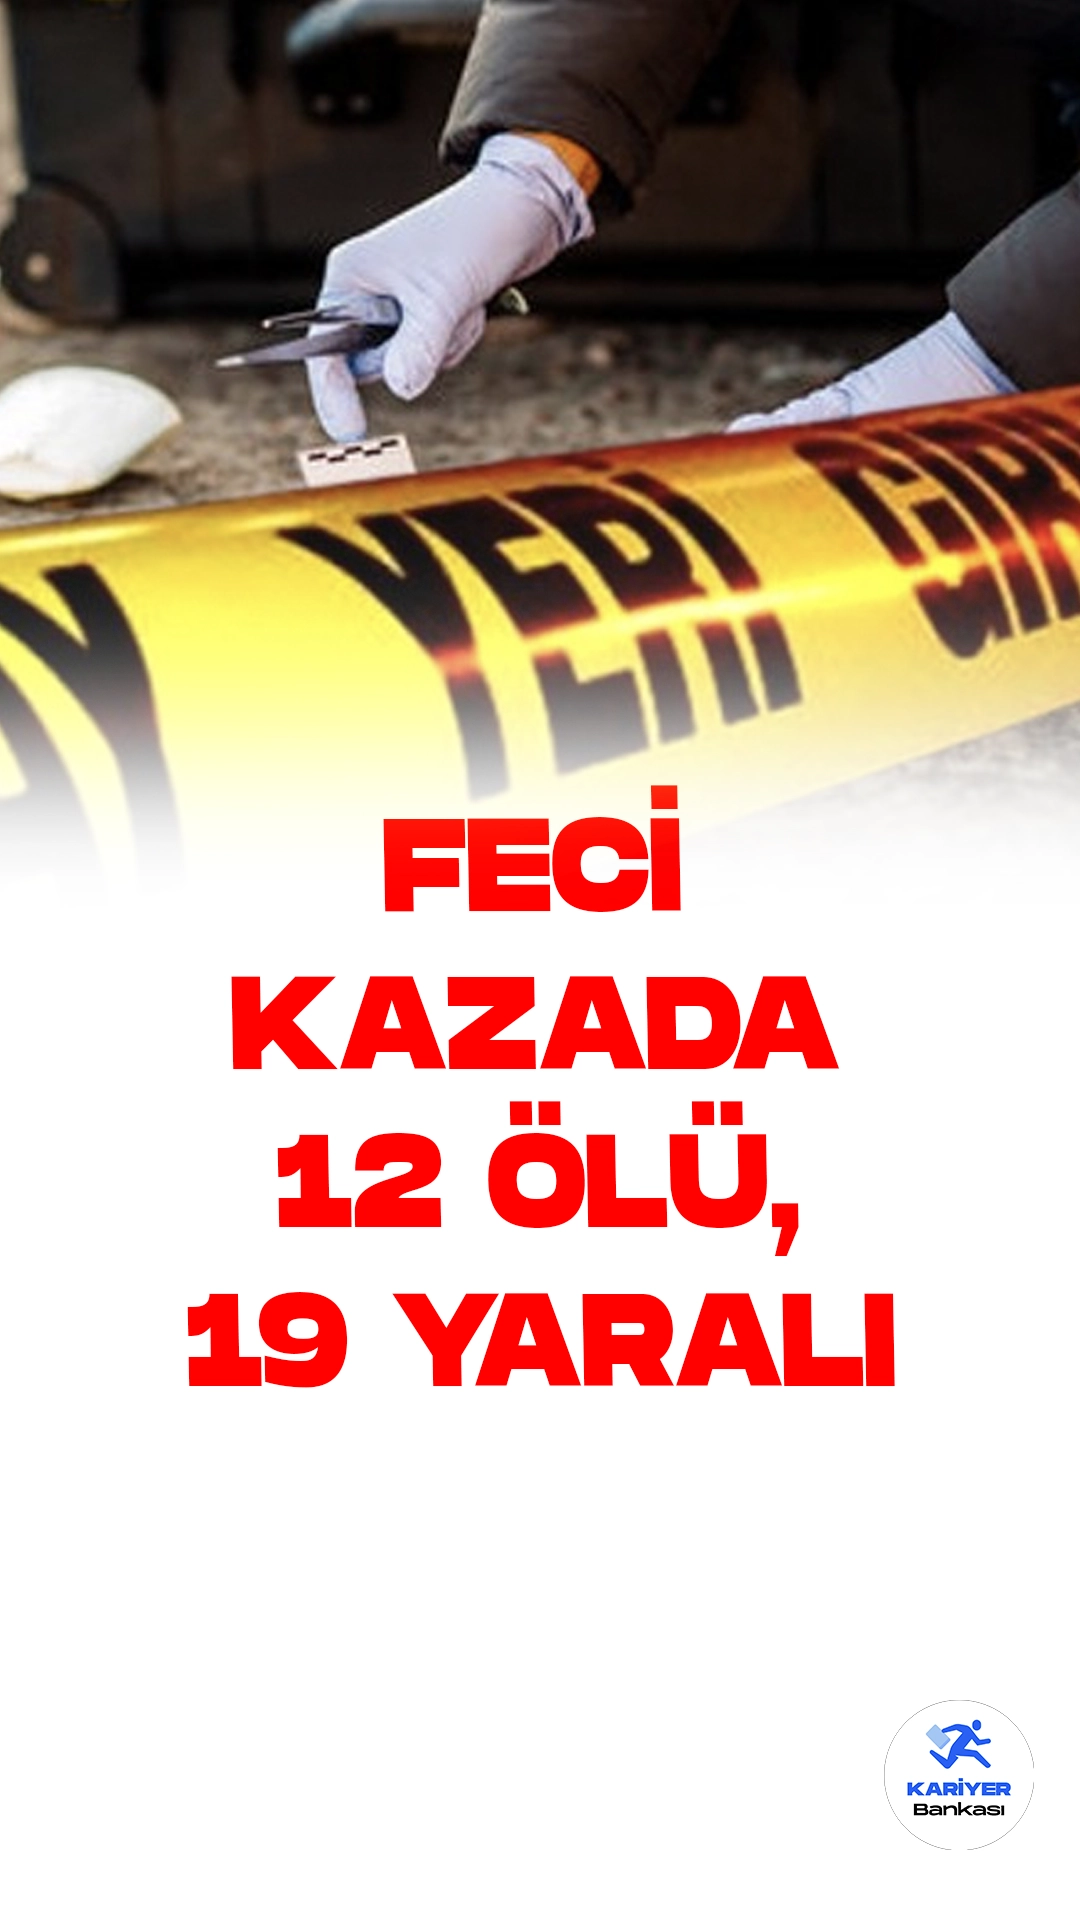 Yozgat Sorgun İlçesinde Yolcu Otobüsü Kaza Yaptı: 12 Ölü, 19 Yaralı.Yozgat'ın Sorgun ilçesinde yolcu otobüsü şarampole yuvarlandı. Kaza sonucunda 12 kişi hayatını kaybetti ve 19 kişi yaralandı.